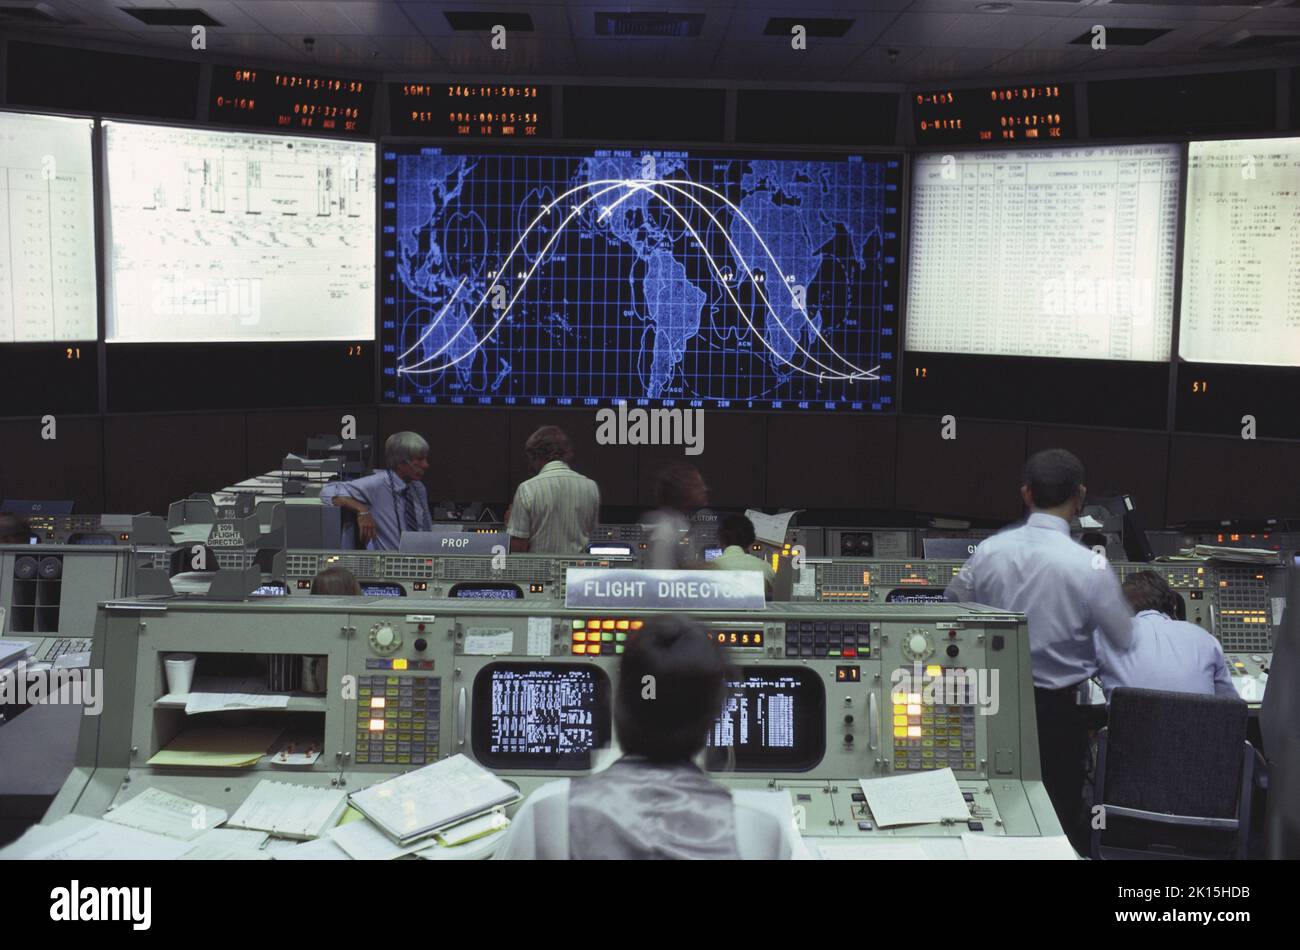 Uno sguardo alla sala di controllo della missione della NASA presso il Johnson Space Center, noto anche per il suo callsign, "Houston", durante una simulazione di una missione spaziale. Foto circa 1985. Foto Stock